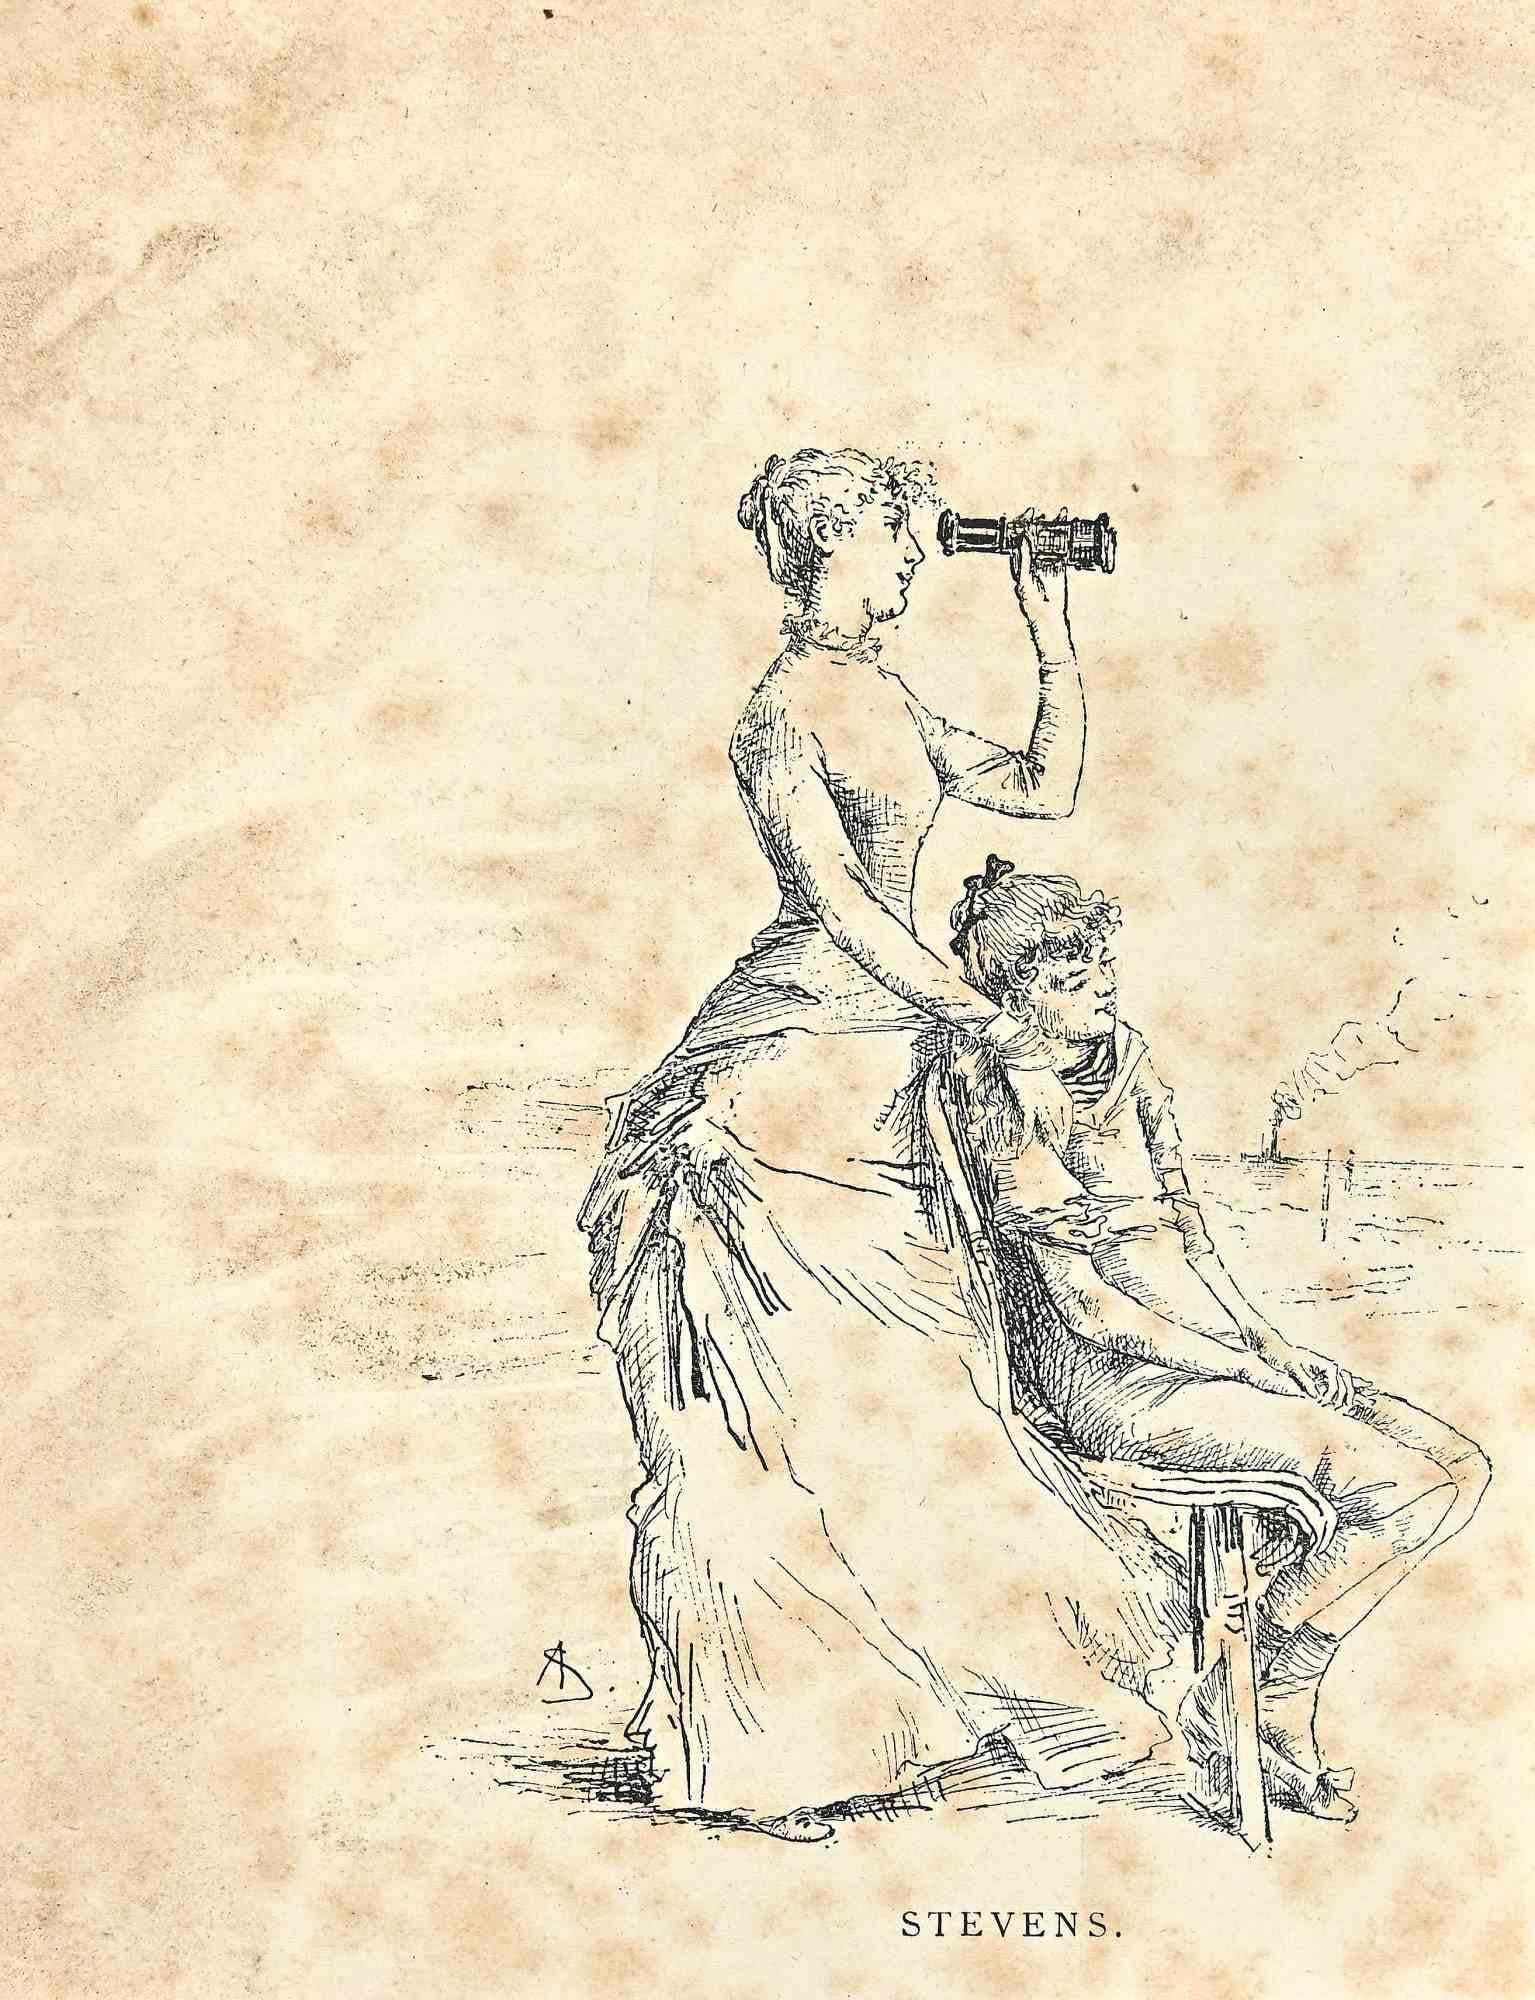 The View est une estampe réalisée par Alfred Stevens (1823-1906), à la fin des années 1880.

Lithographie sur papier couleur ivoire.

Signé sur la plaque en bas.

Bonnes conditions avec des rousseurs diffuses dues à l'époque.

L'œuvre est réalisée